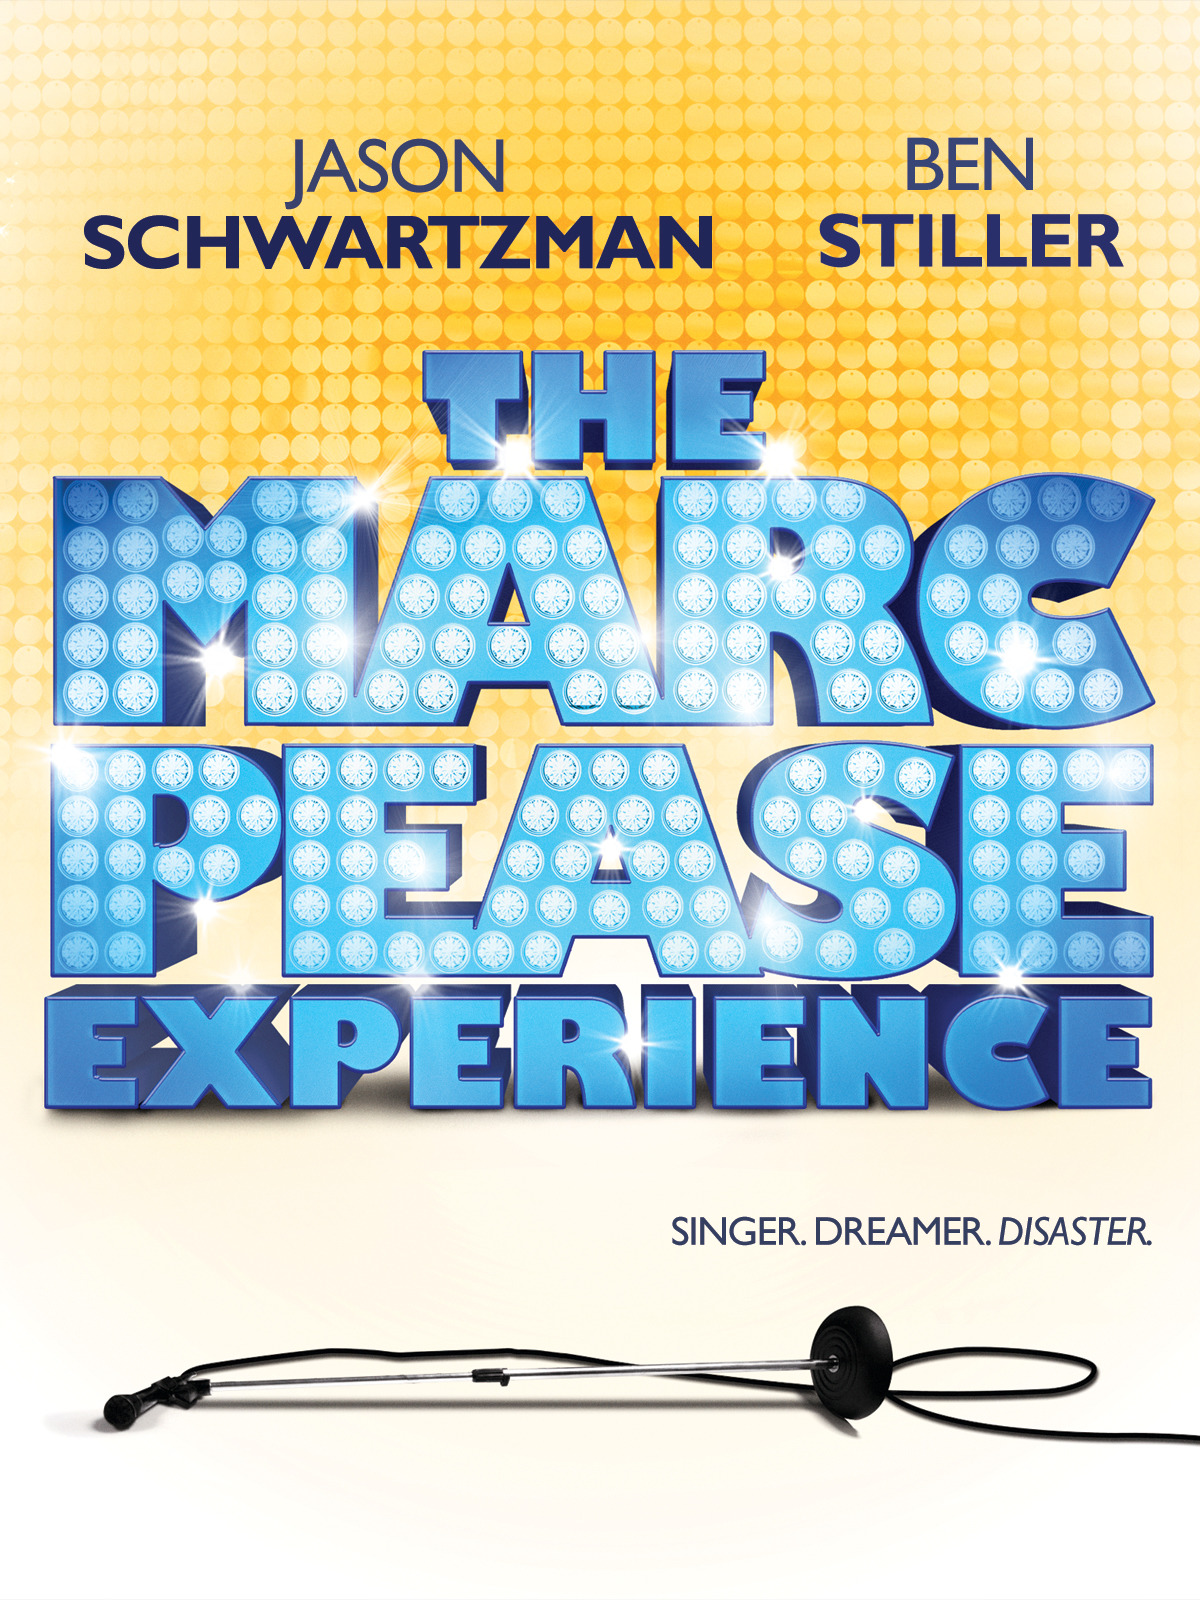 The Marc Pease Experience (2009) ยอดชายเท้าไฟ หัวใจขอแด๊นซ์